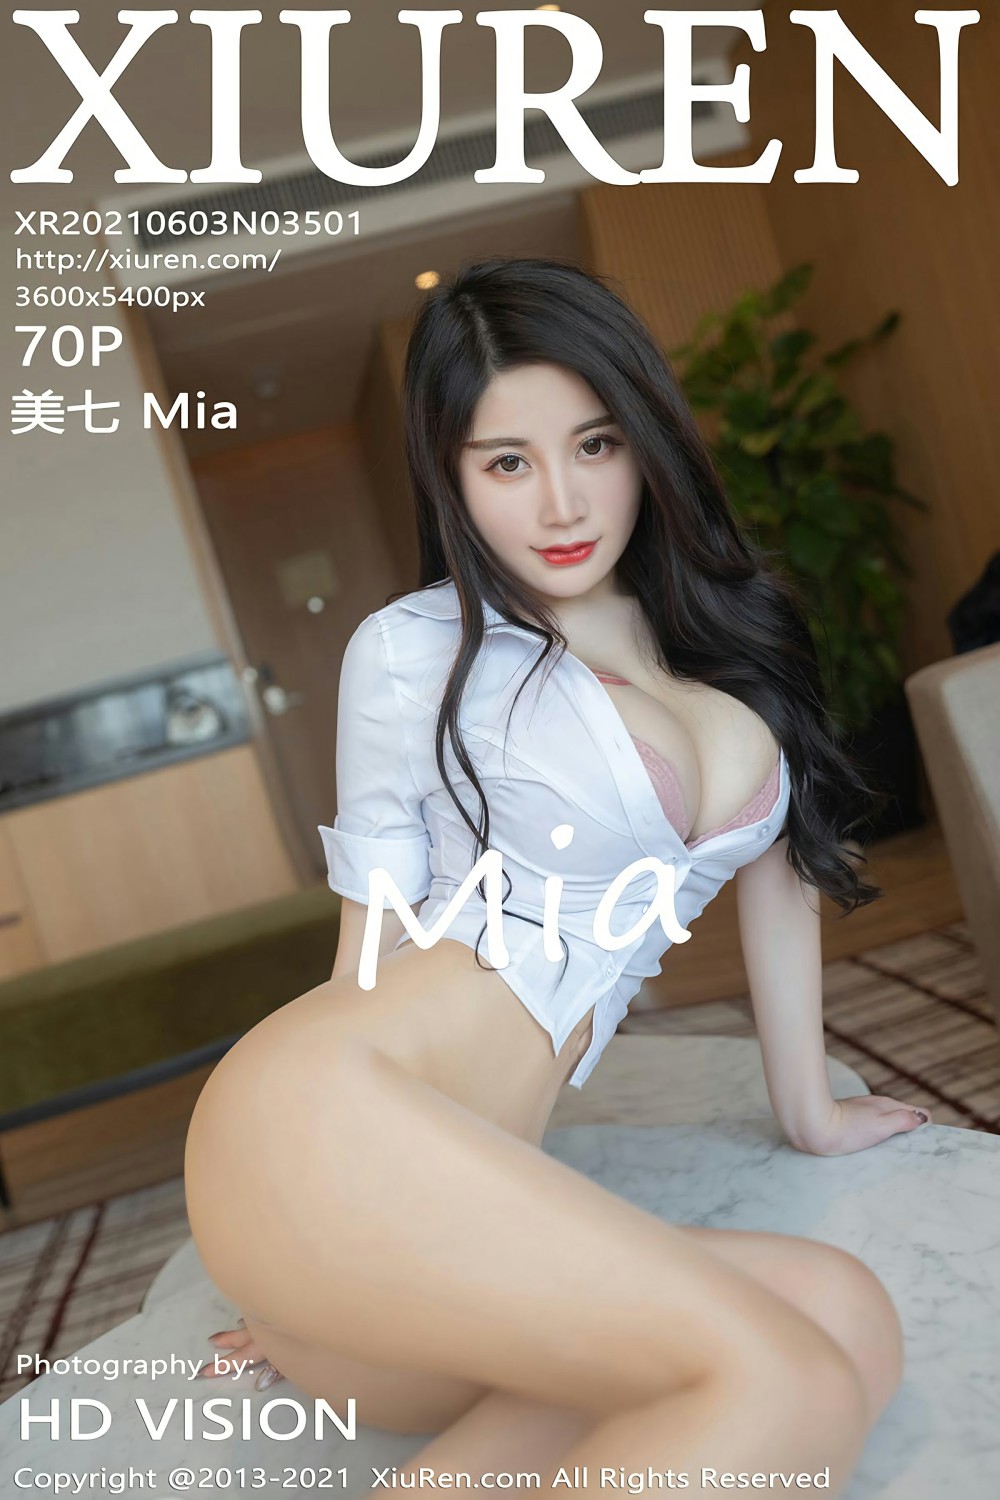 [XiuRen秀人网] No.3501 美七 Mia1张